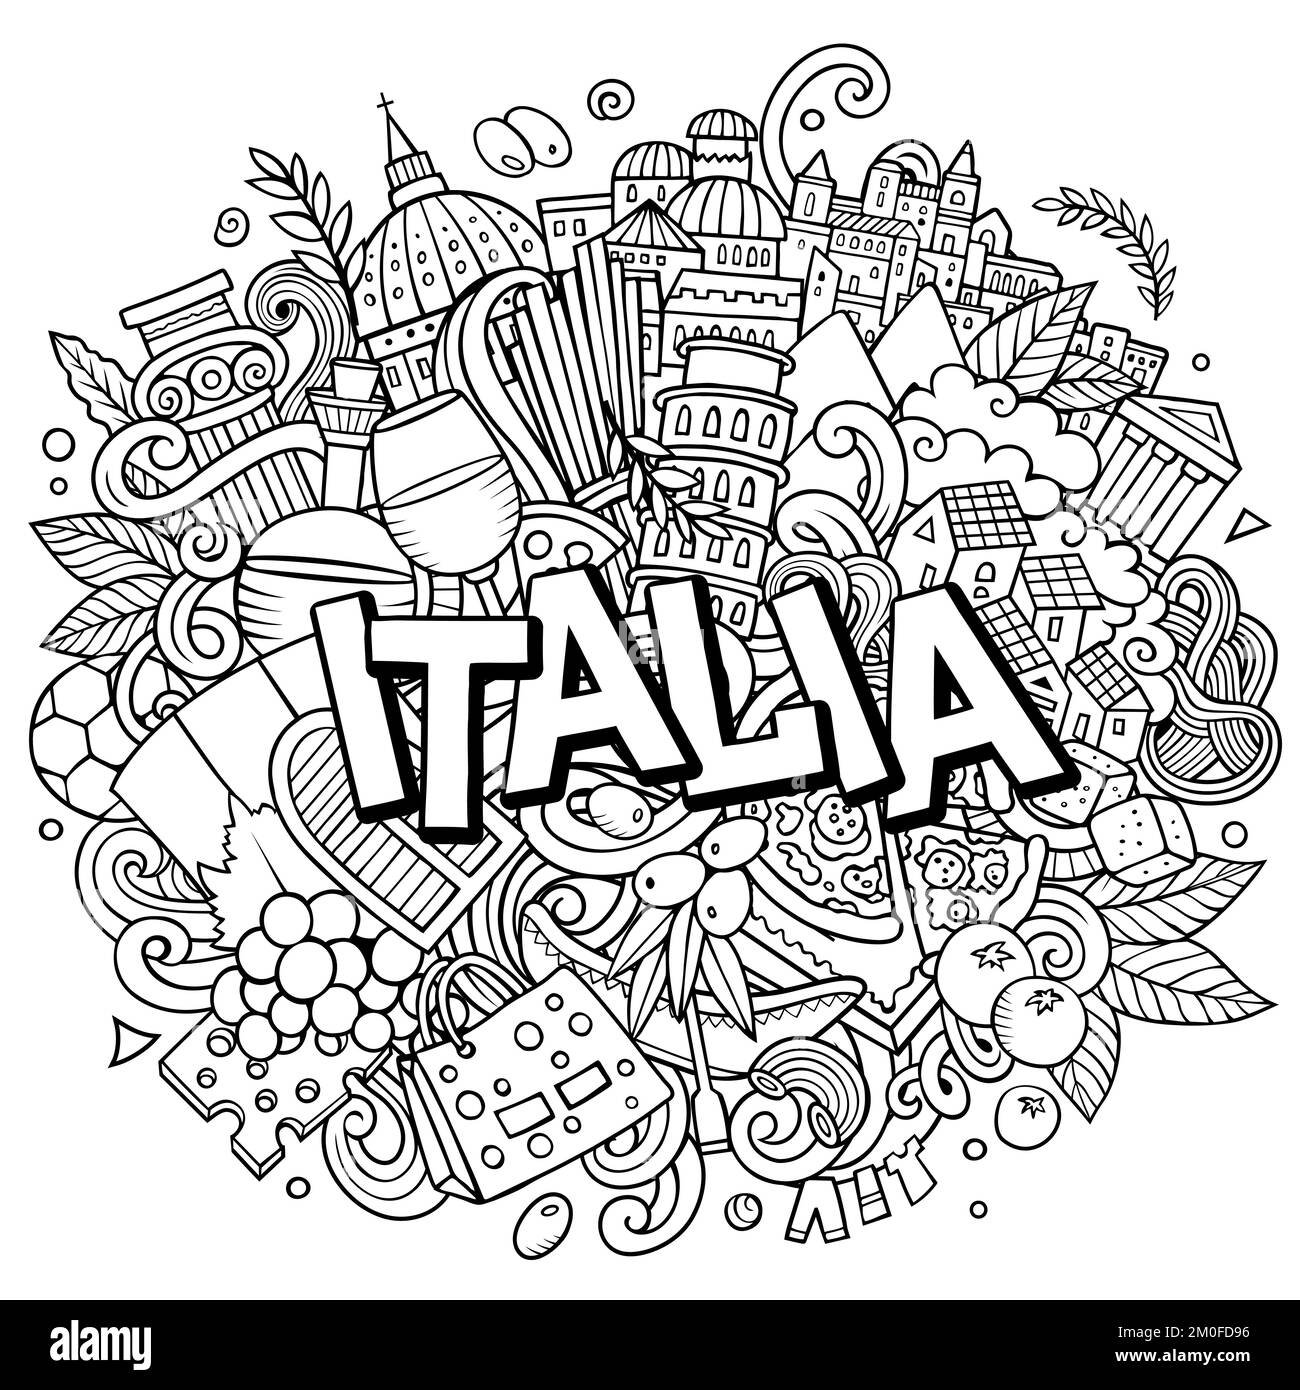 Italia handgezeichnete Cartoon-Kritzeleien Illustration. Witziges Reisedesign. Stock Vektor